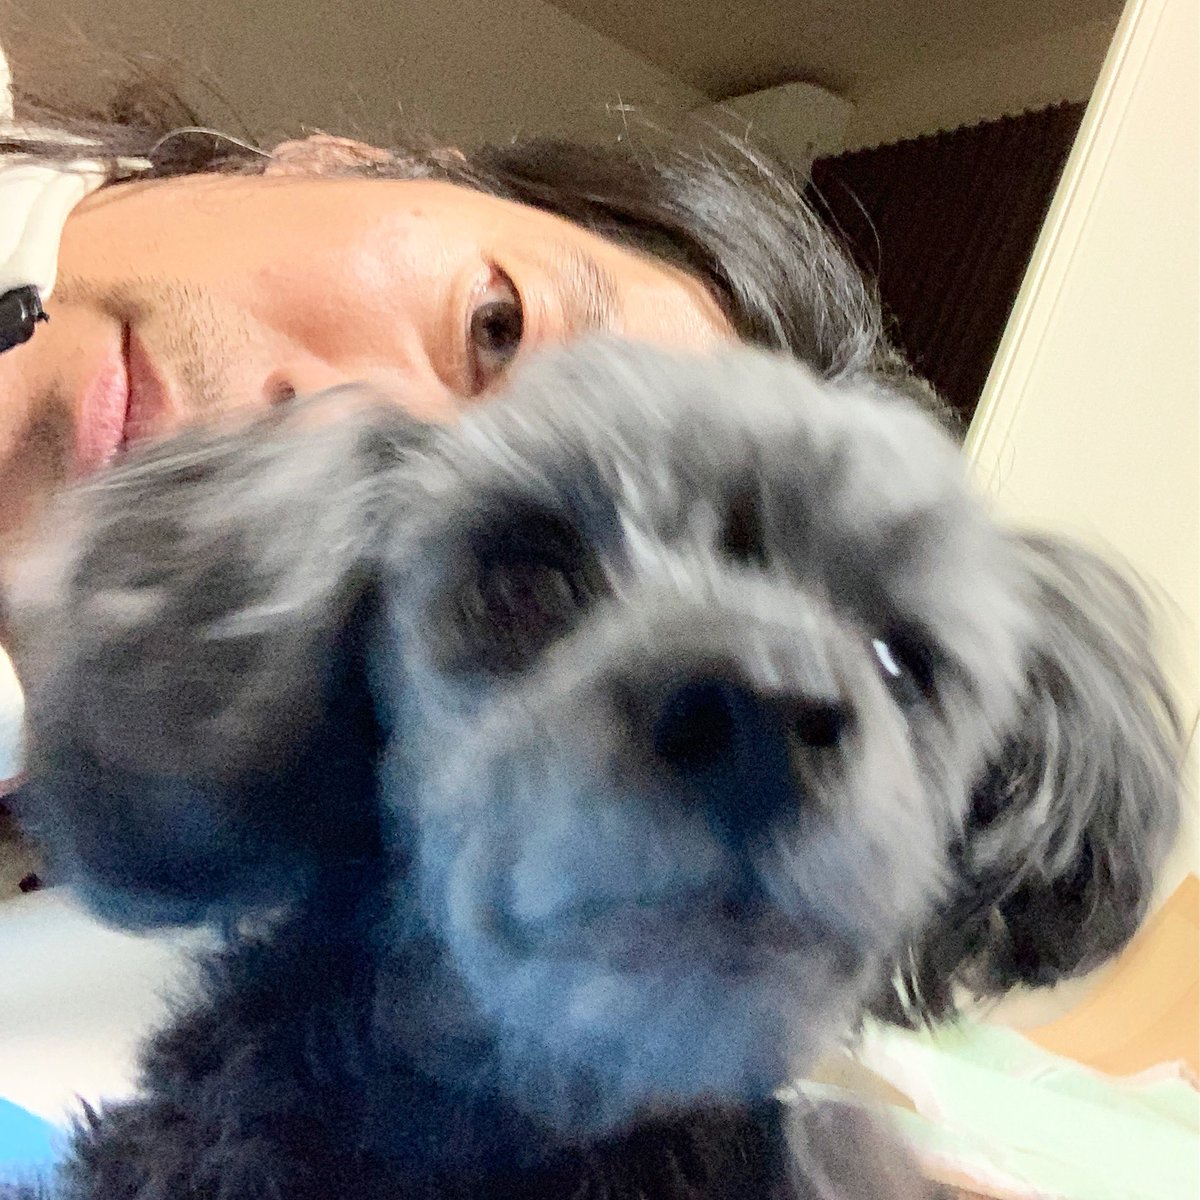 小川 健太郎 環境ハイドン型 V Twitter 映画版ネバーエンディングストーリーのファルコンみたいなのが写り込んで来る実家 犬アレルギー 老犬 ミヒャエルエンデ